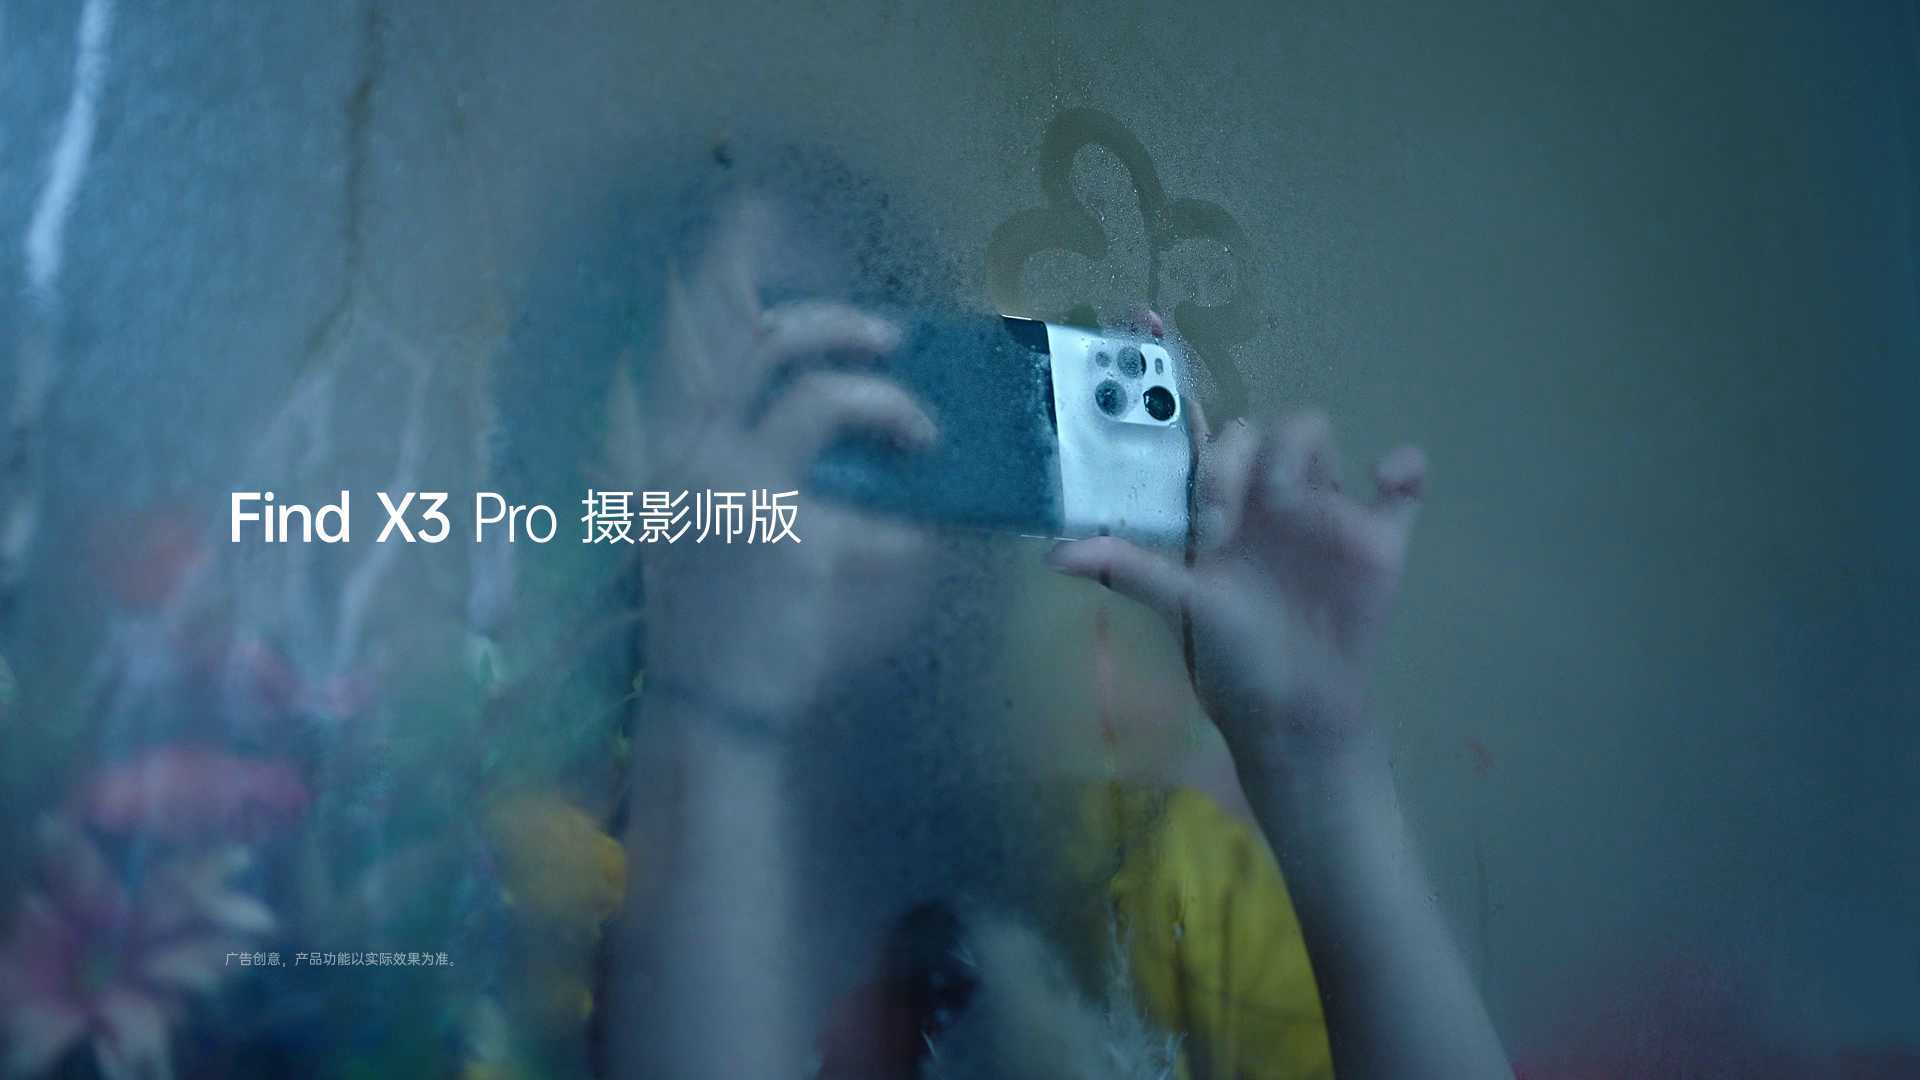 OPPO Find X3 Pro "Flower"